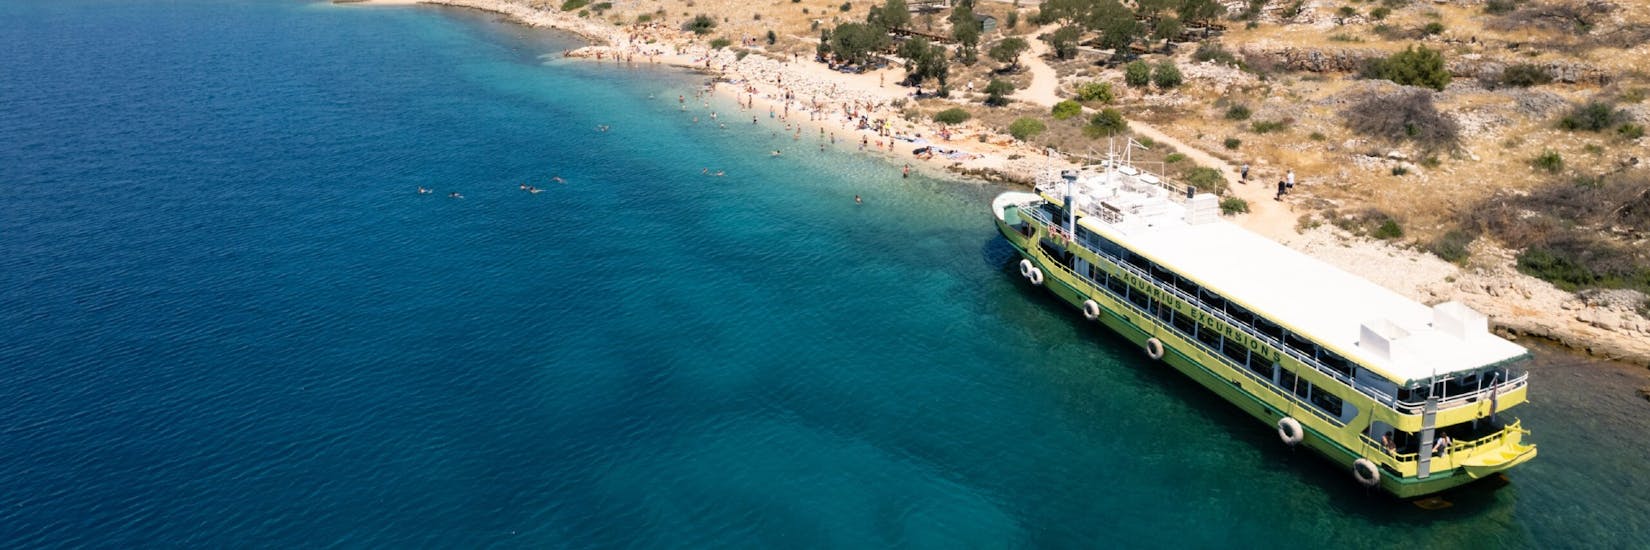 Das Boot von Aquarius Excursions Zadar vor einem Strand während ihrer Tour.